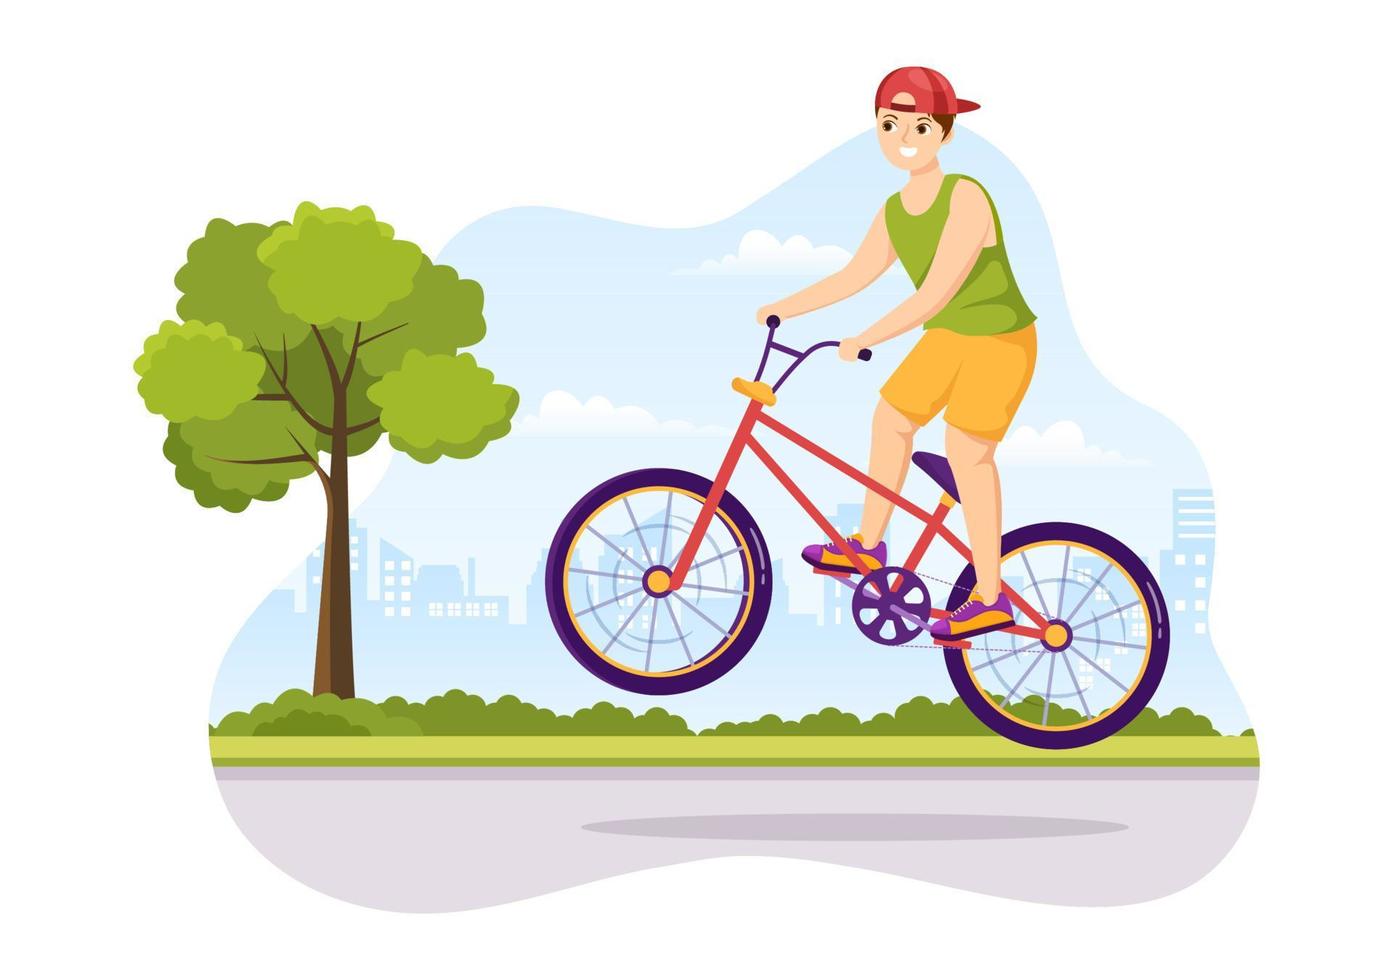 illustration de sport de vélo bmx avec des jeunes faisant du vélo pour une bannière web ou une page de destination dans un modèle de fond de dessin à la main de dessin animé plat vecteur